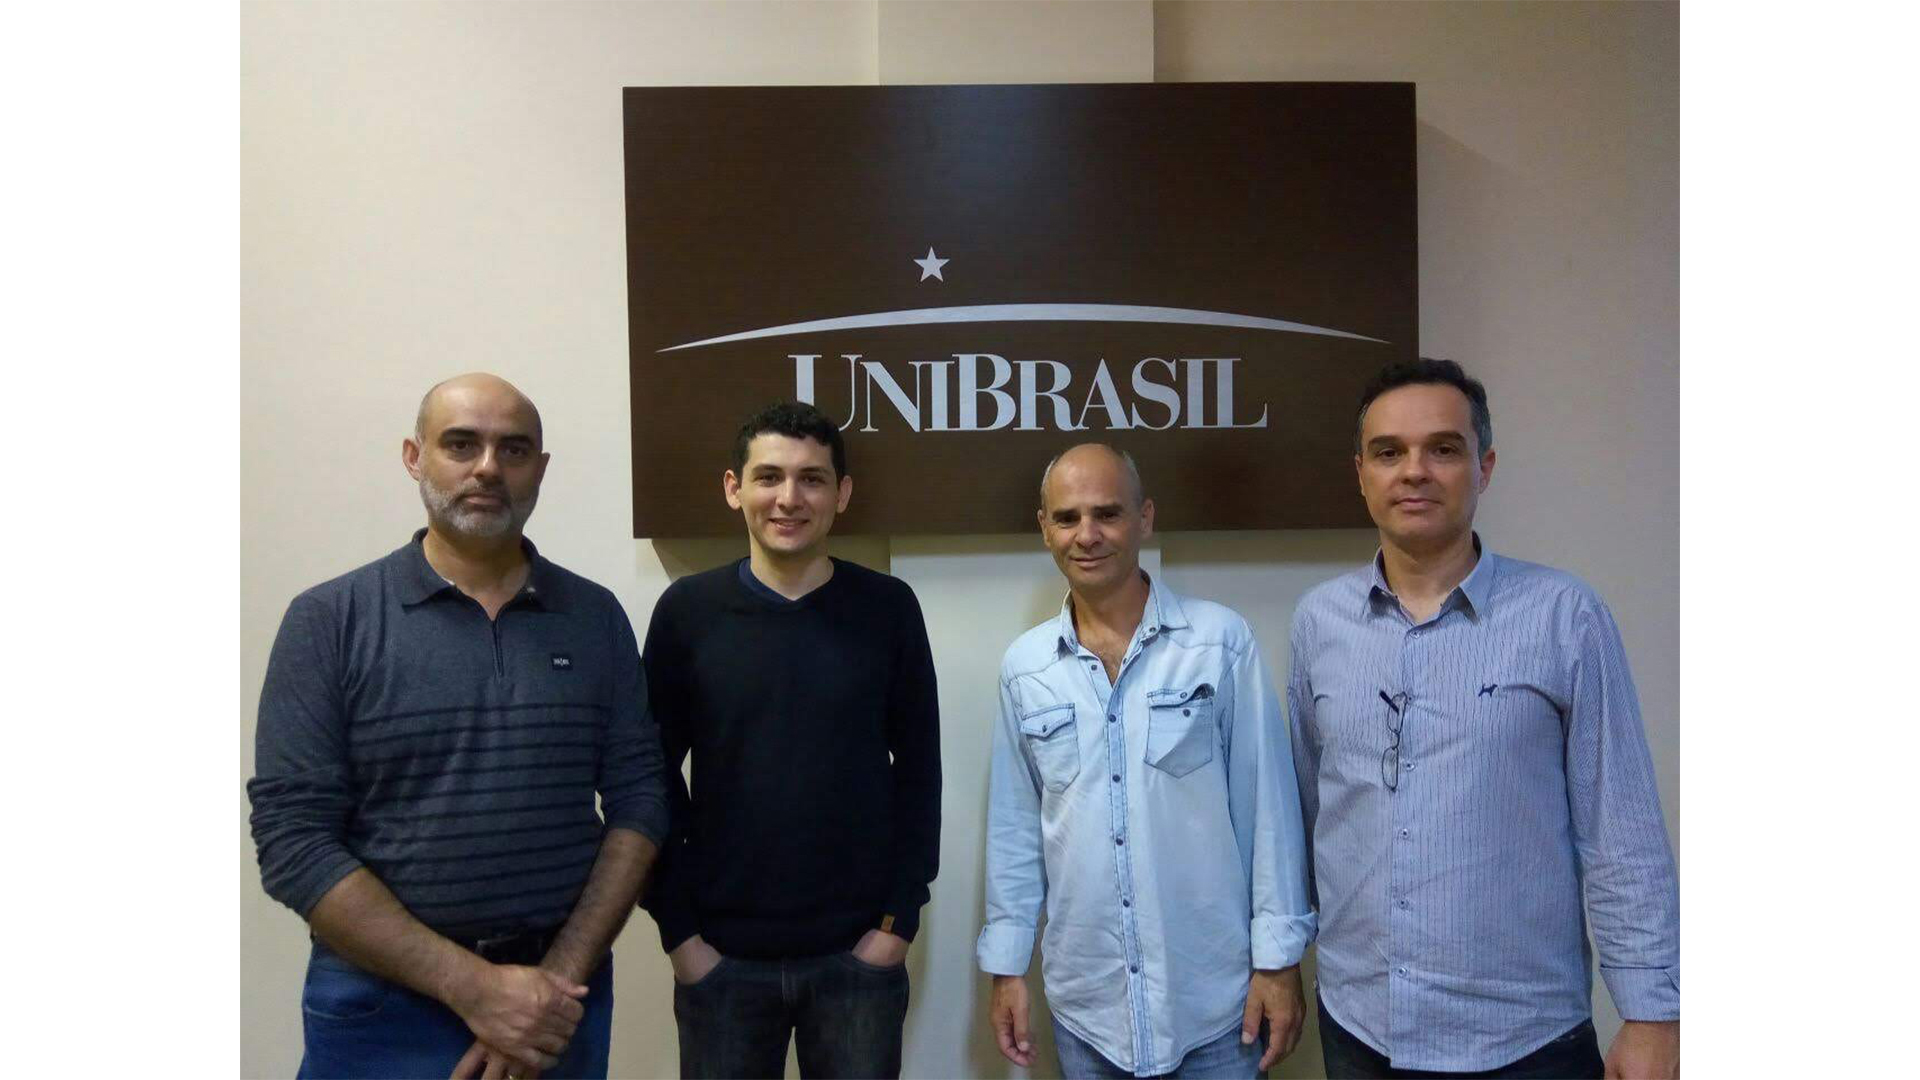 Leonardo Antônio dos Santos (segundo, da esquerda para direita) em visita ao UniBrasil | Foto: Reprodução